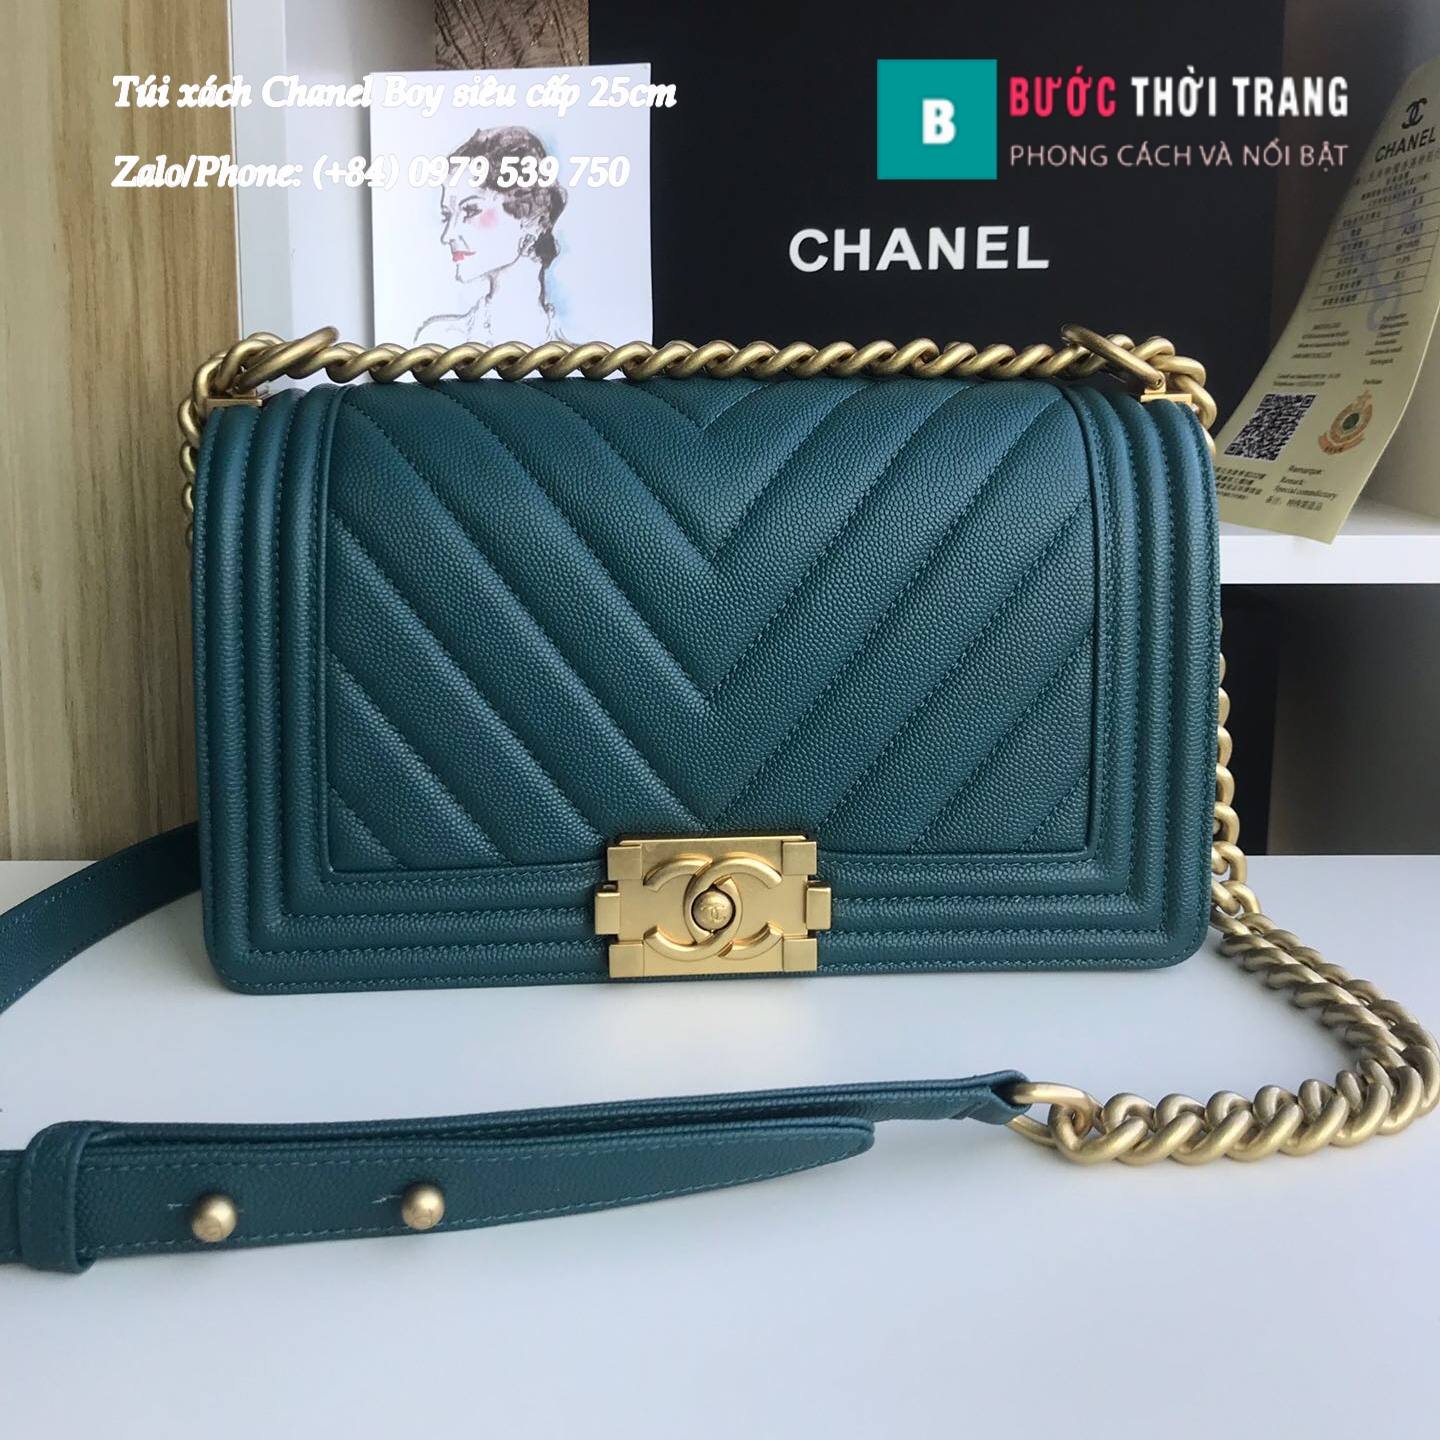 Túi Xách Chanel Boy Siêu Cấp Vân V màu xanh lam đậm (1)